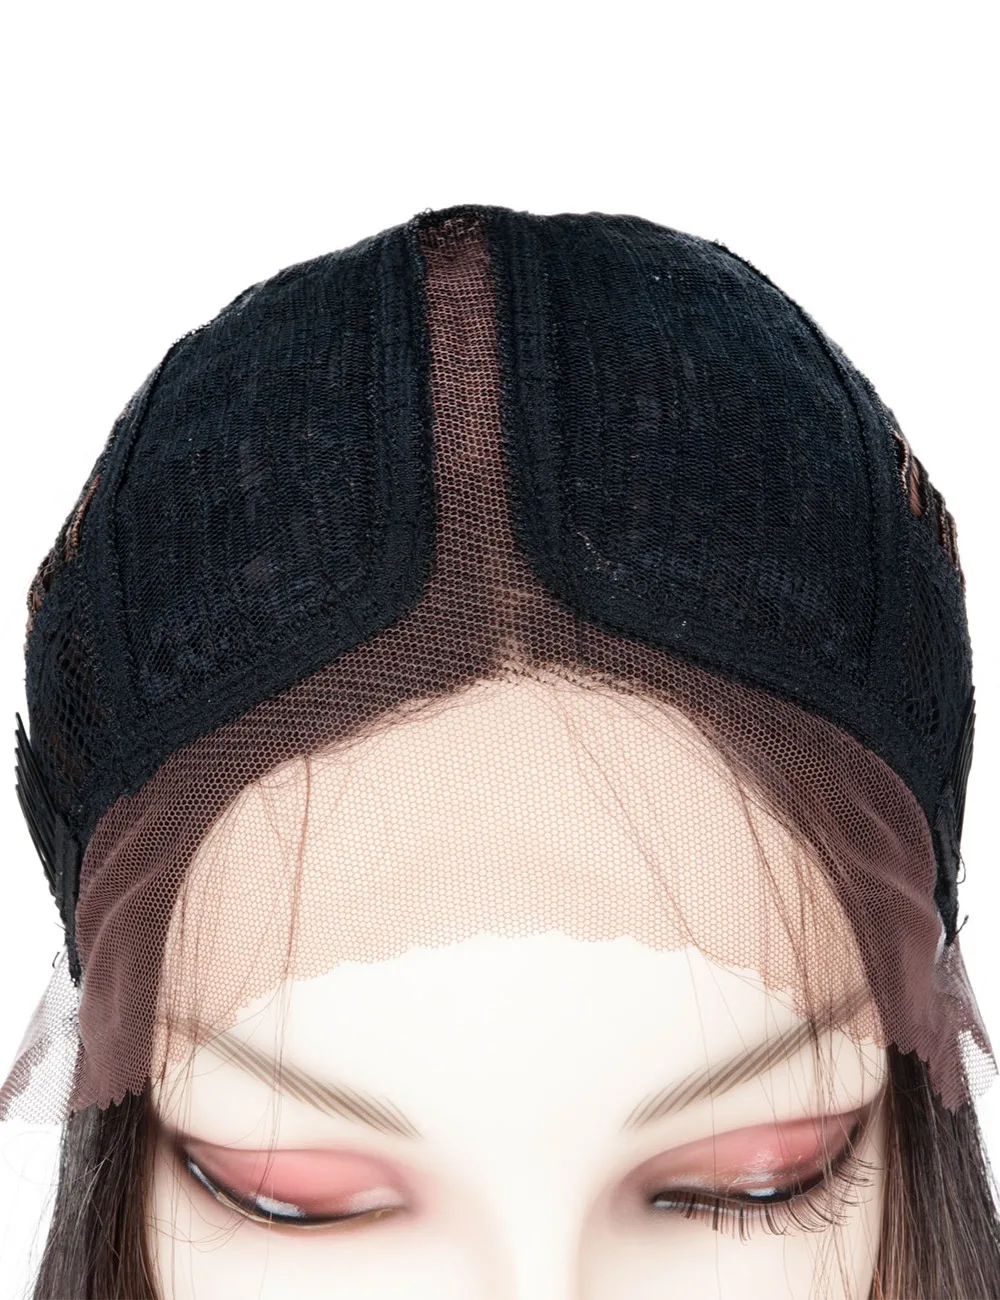 JINGFA 40 дюймов парик с длинными прямыми волосами термостойкие синтетические волокна косплей костюм парик для женщин синтетические кружева спереди парик